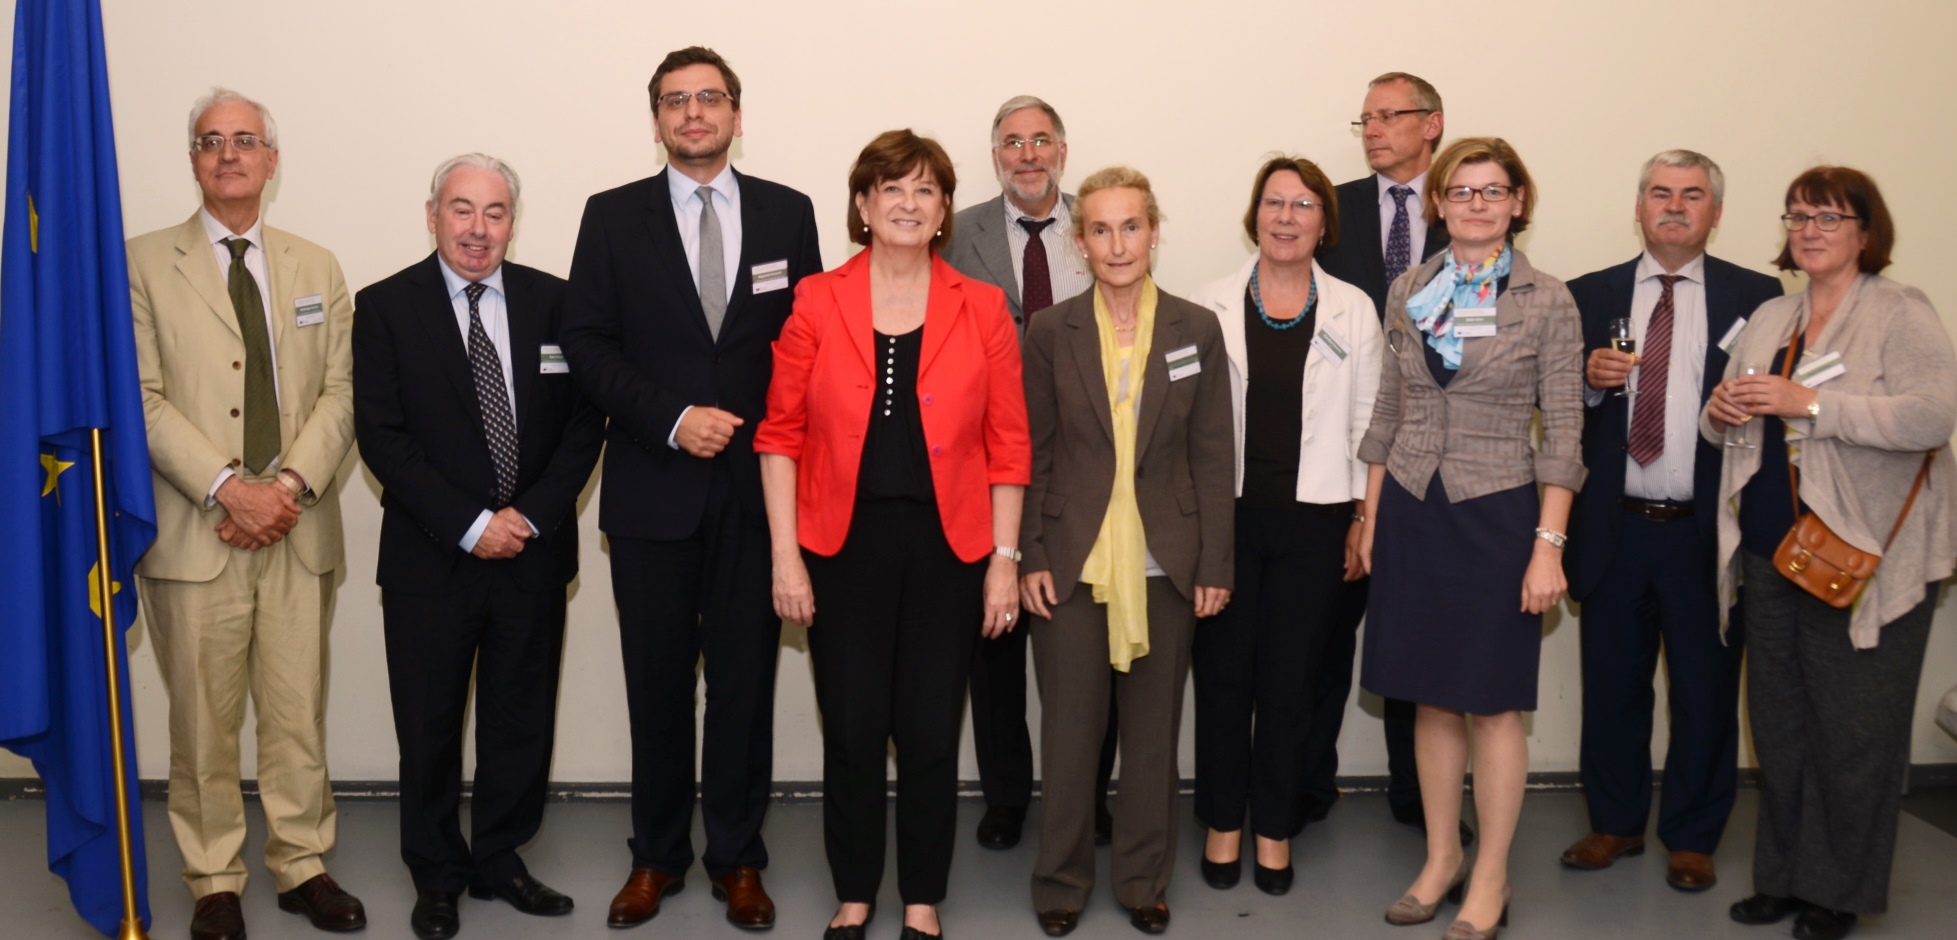 Mme Le Bail, Postulski sowie weitere Vertreter/innen europäischer Netzwerke (© European Union, 2014)